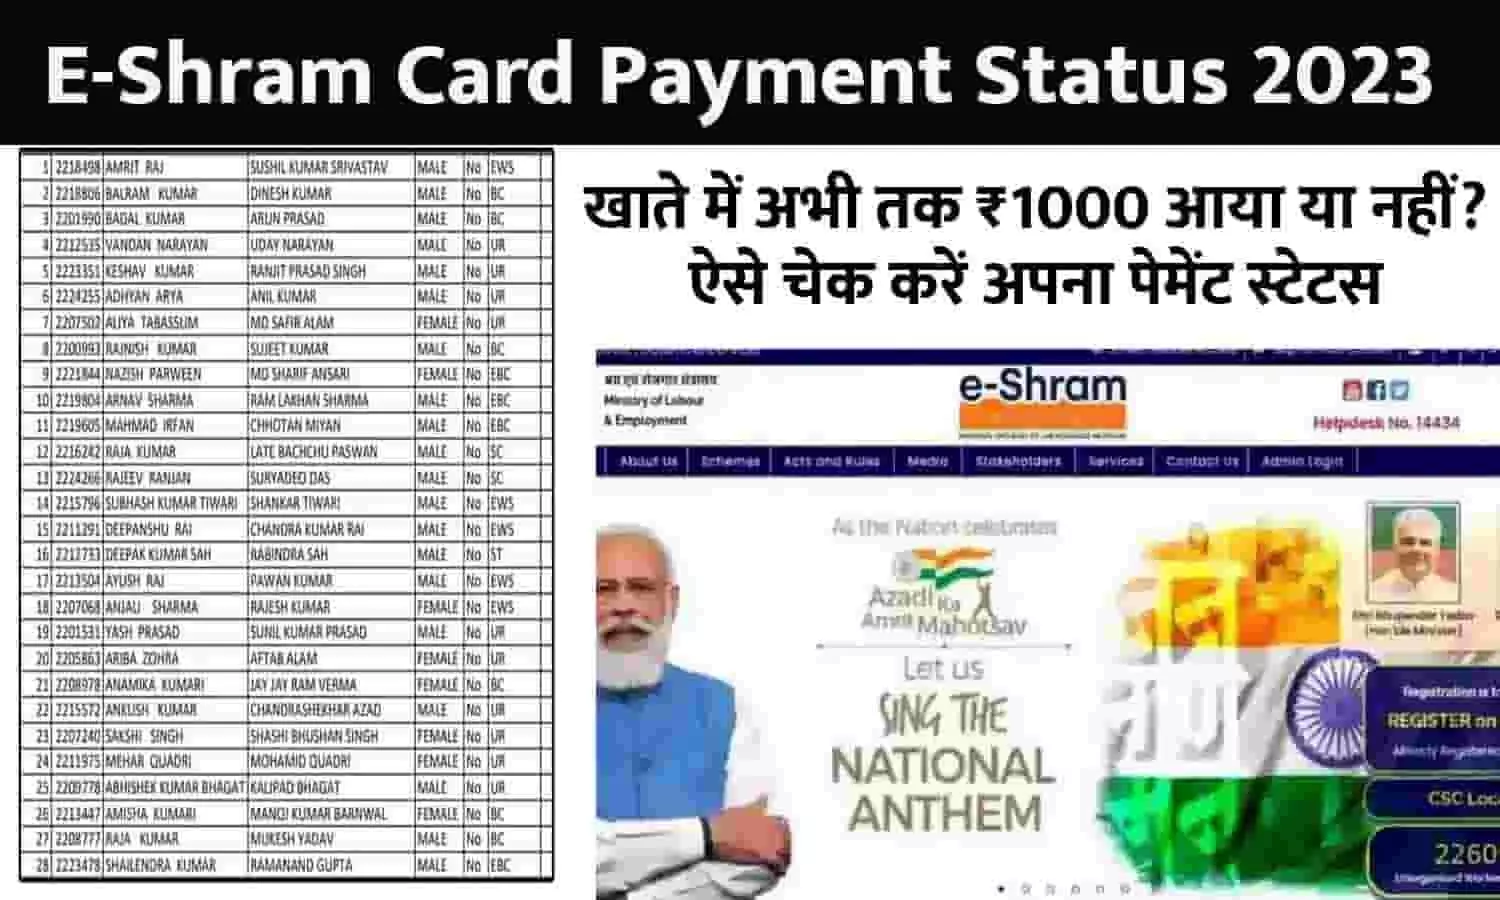 E-Shram Card Payment Status Big Alert 2023: खाते में अभी तक ₹1000 आया या नहीं? ऐसे चेक करें अपना पेमेंट स्टेटस